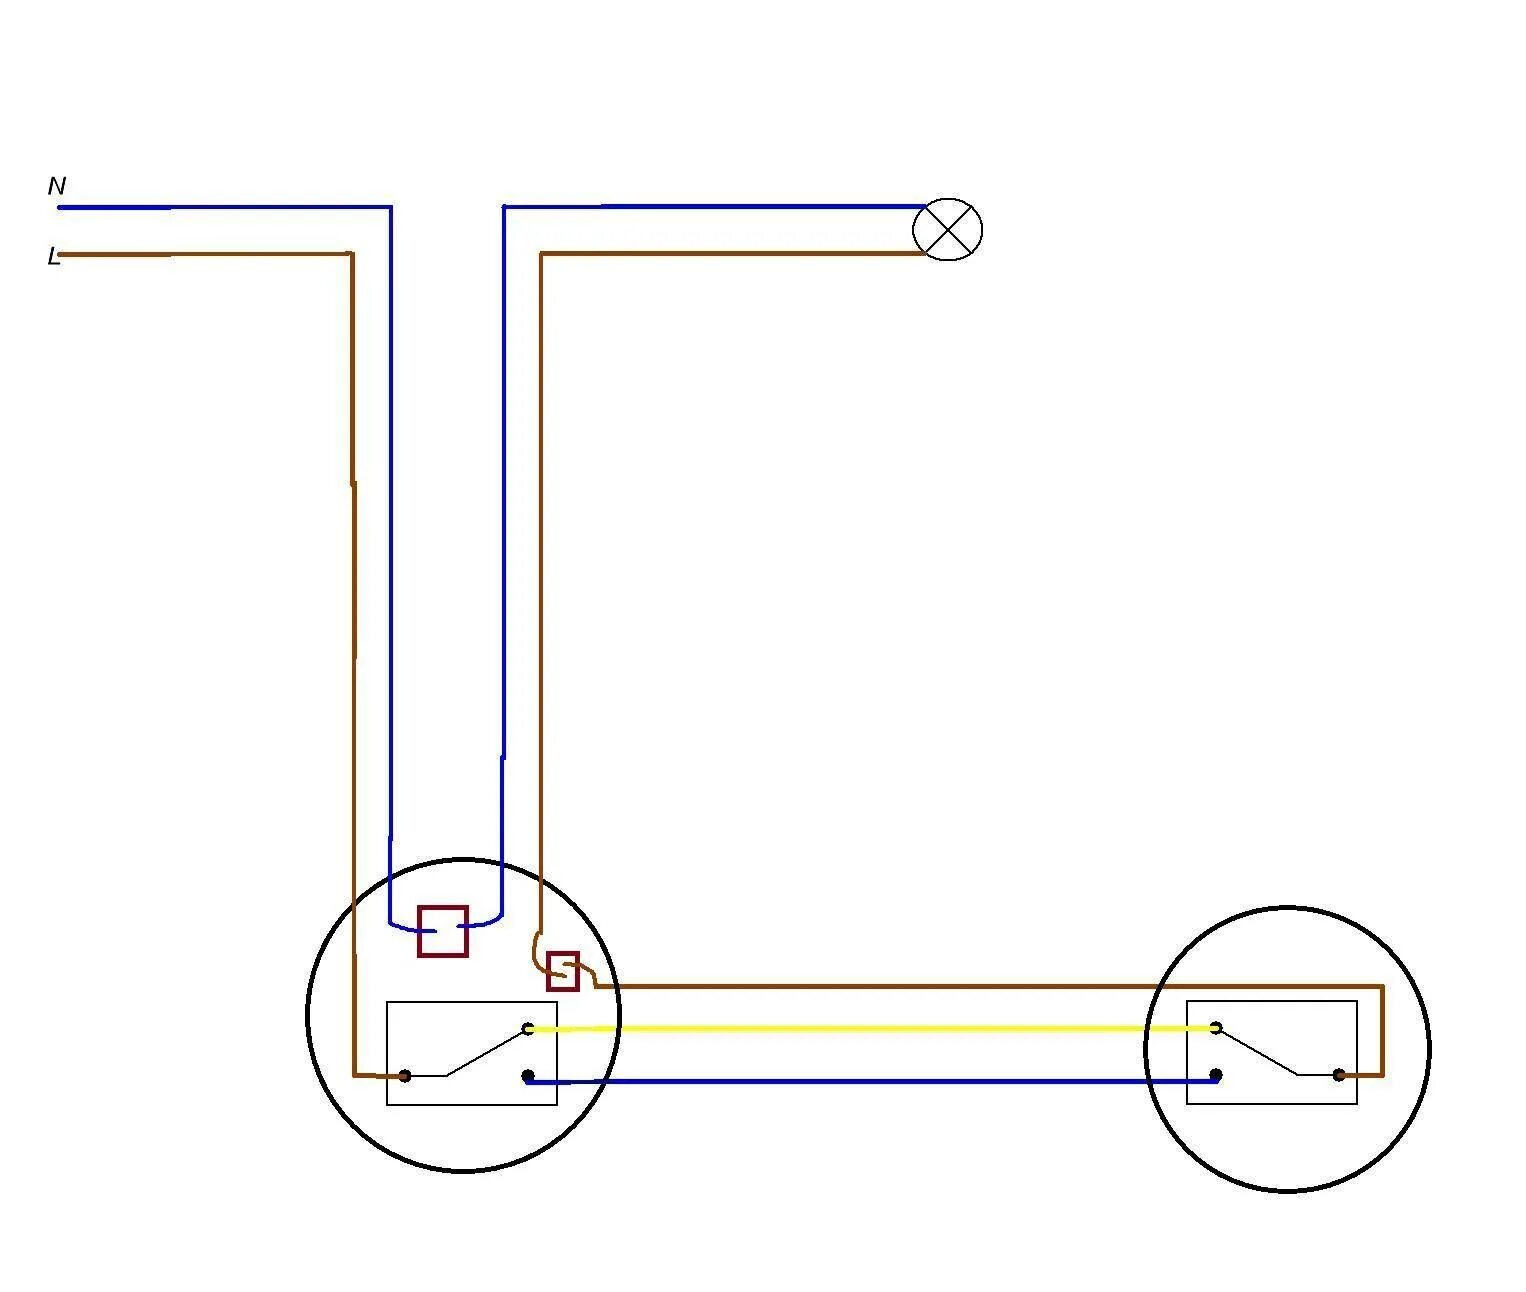 Соединение проходного выключателя. Схема подключения 2х проходных выключателей. Схема подключения проходных выключателей из 2-х мест. Схема подключения проходных выключателей из 2-х. Проходной выключатель из 2 мест схема подключения.